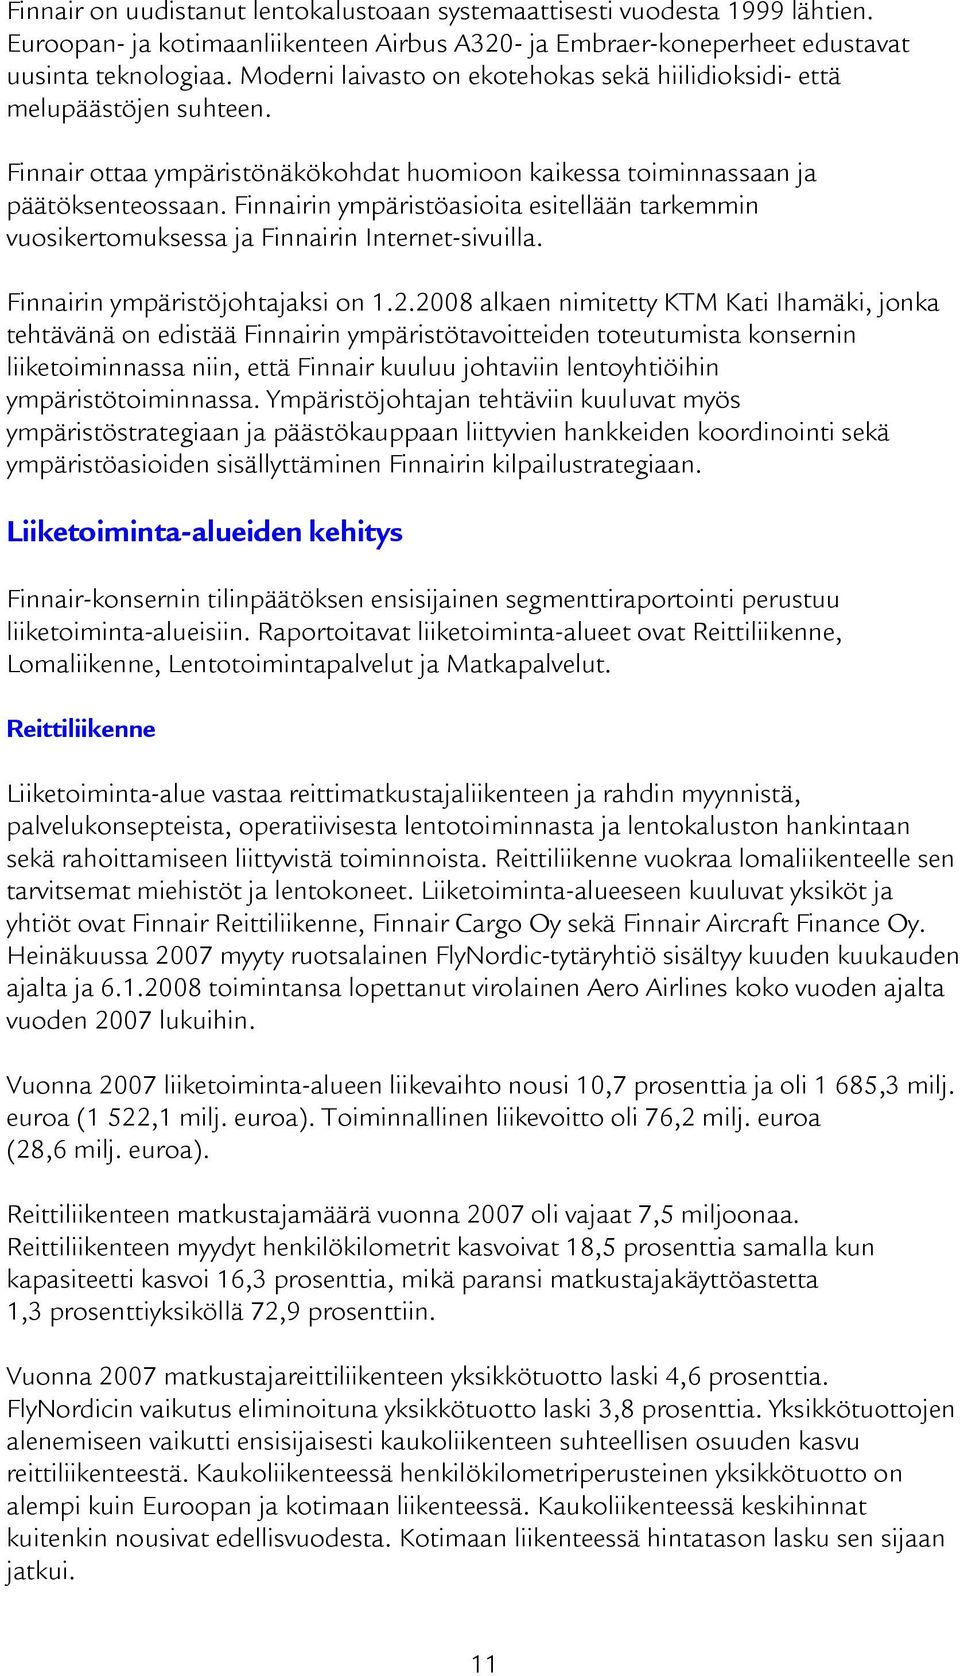 Finnairin ympäristöasioita esitellään tarkemmin vuosikertomuksessa ja Finnairin Internet-sivuilla. Finnairin ympäristöjohtajaksi on 1.2.